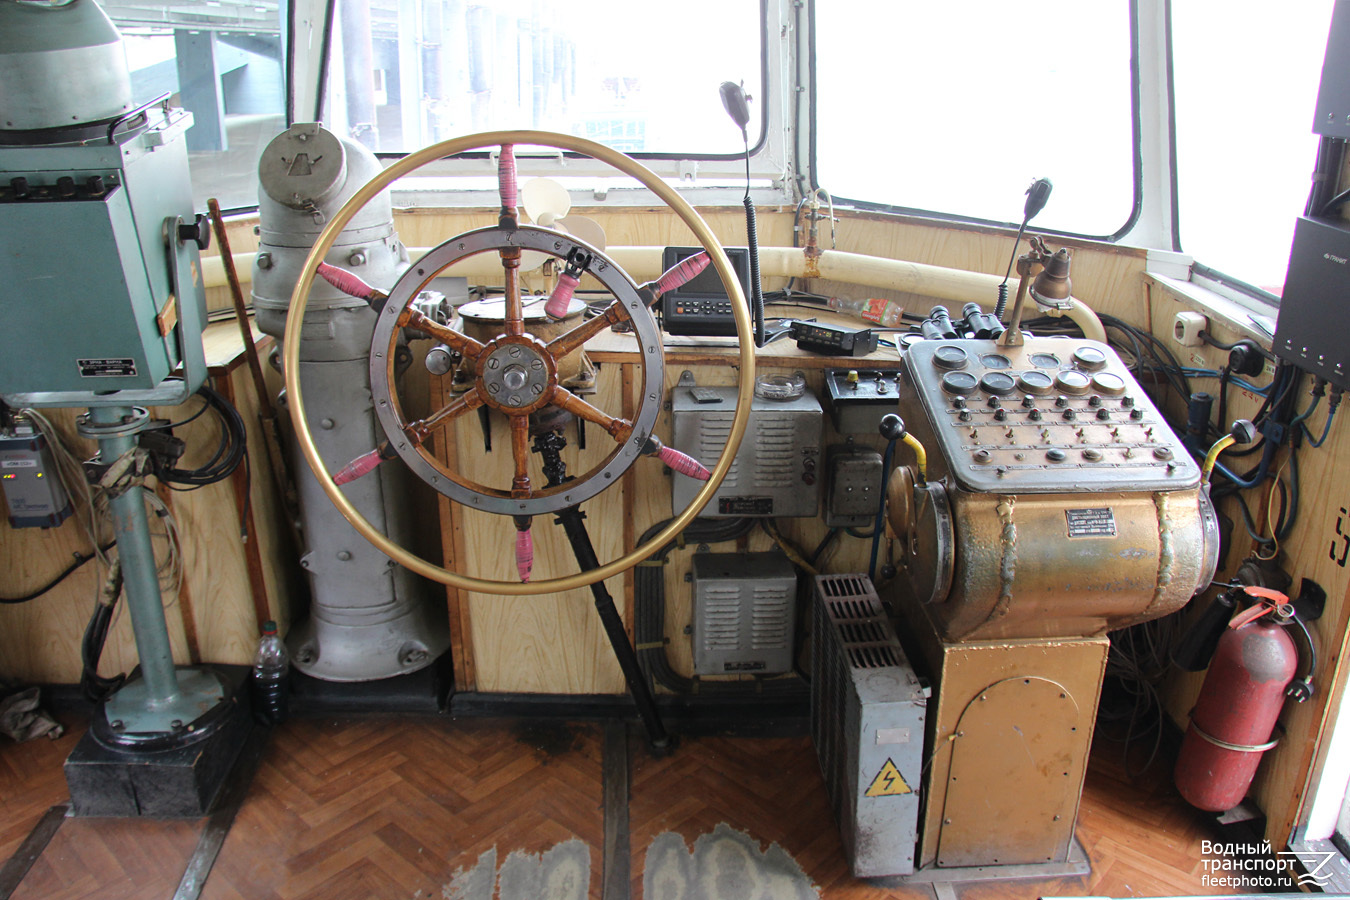 ОМ-152. Wheelhouses, Control panels